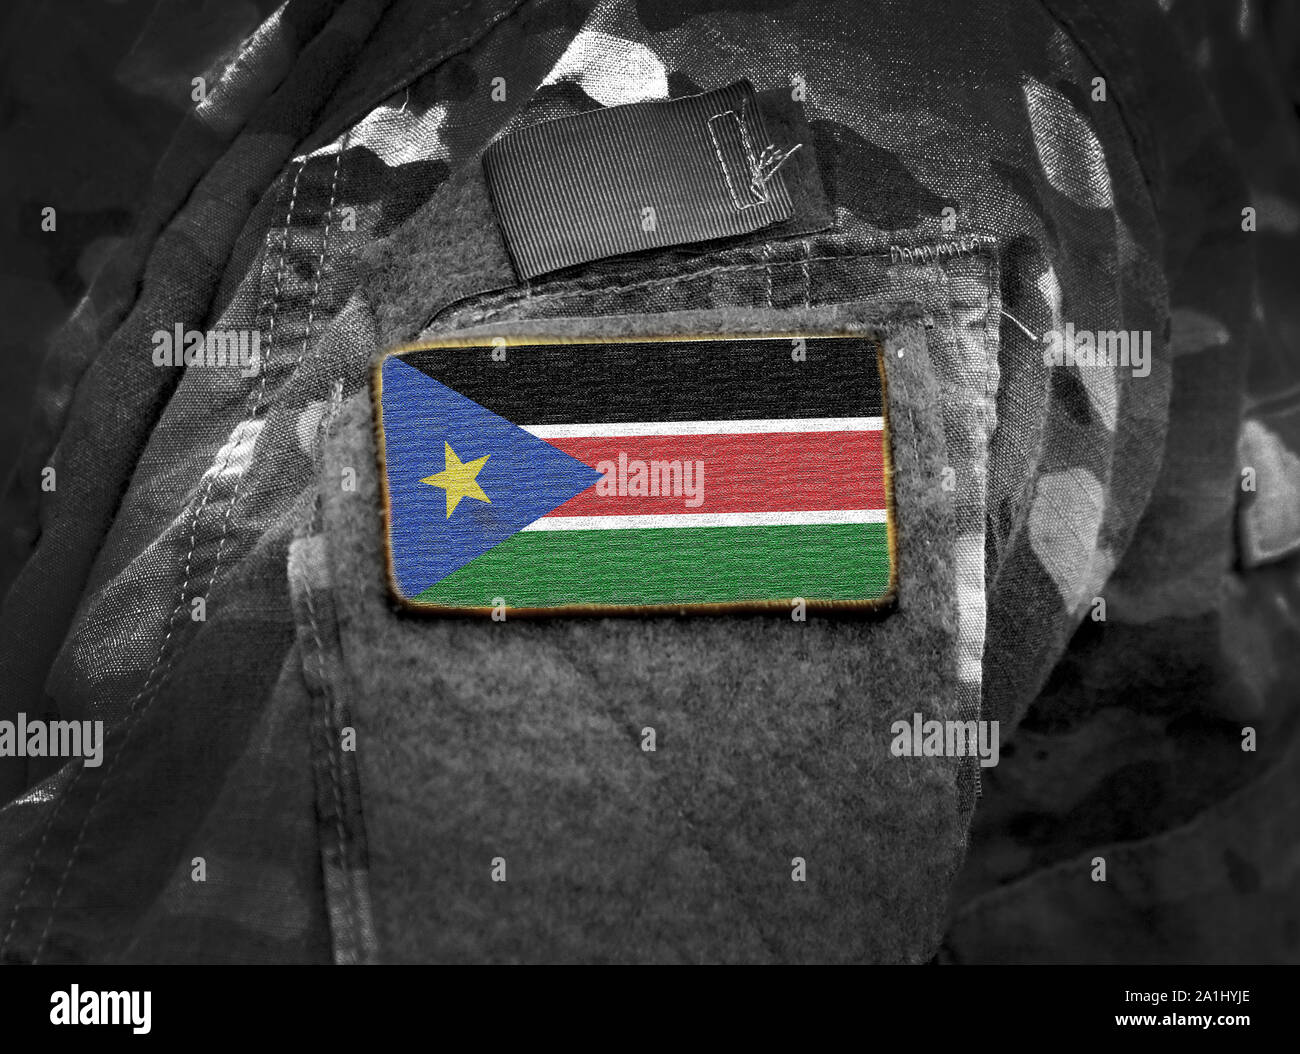 Pavillon du Soudan du Sud sur l'uniforme militaire. Armée, soldats, Afrique (collage). Banque D'Images